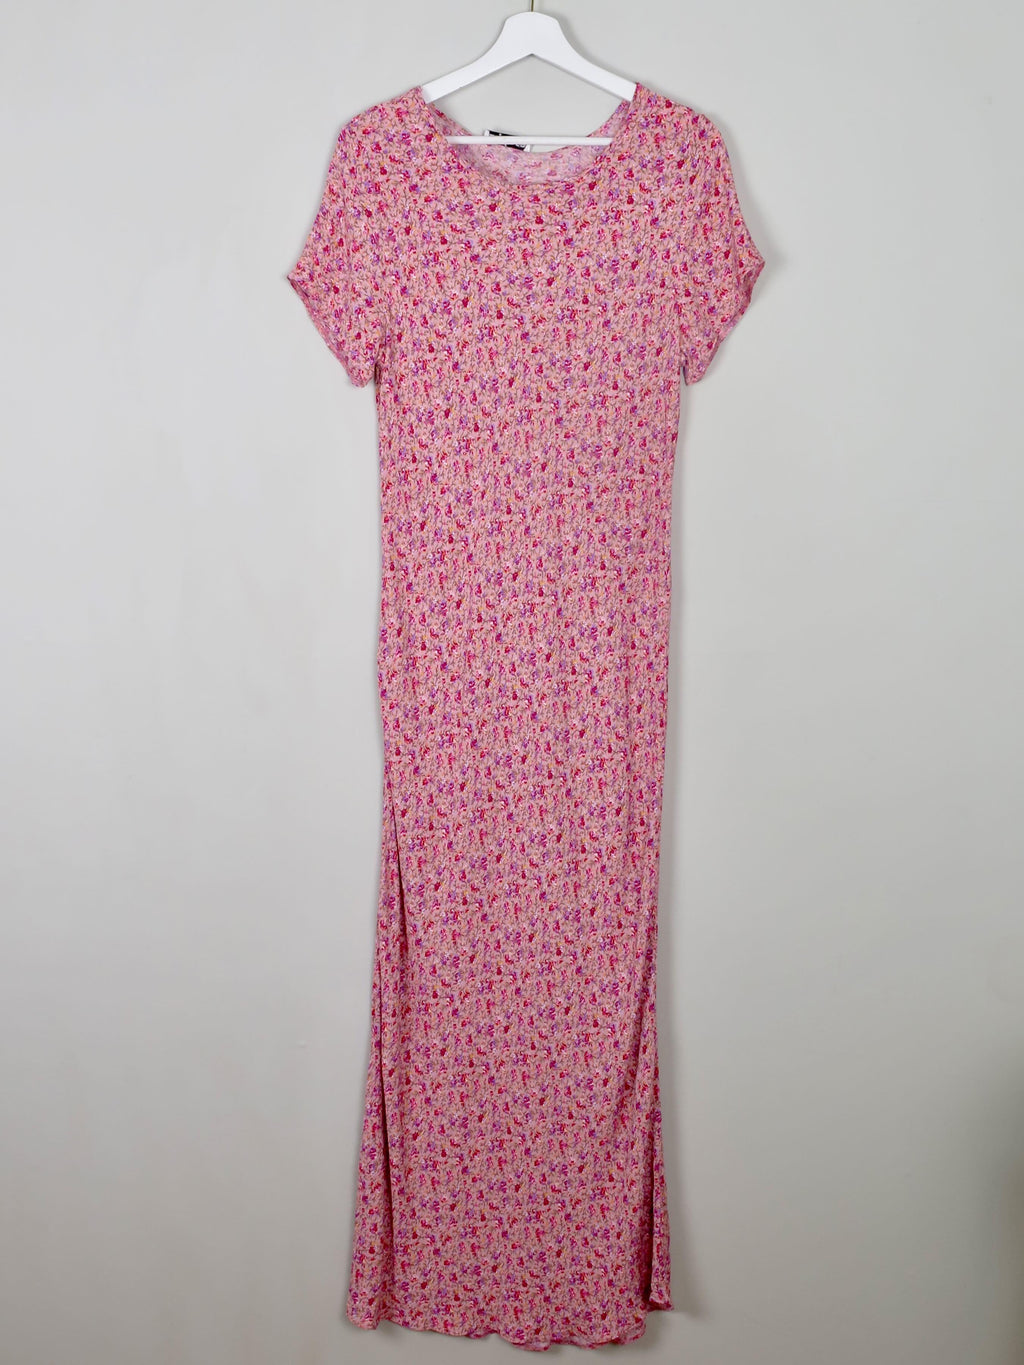 Vintage Pink Floral Maxi Dress M/L - The Harlequin